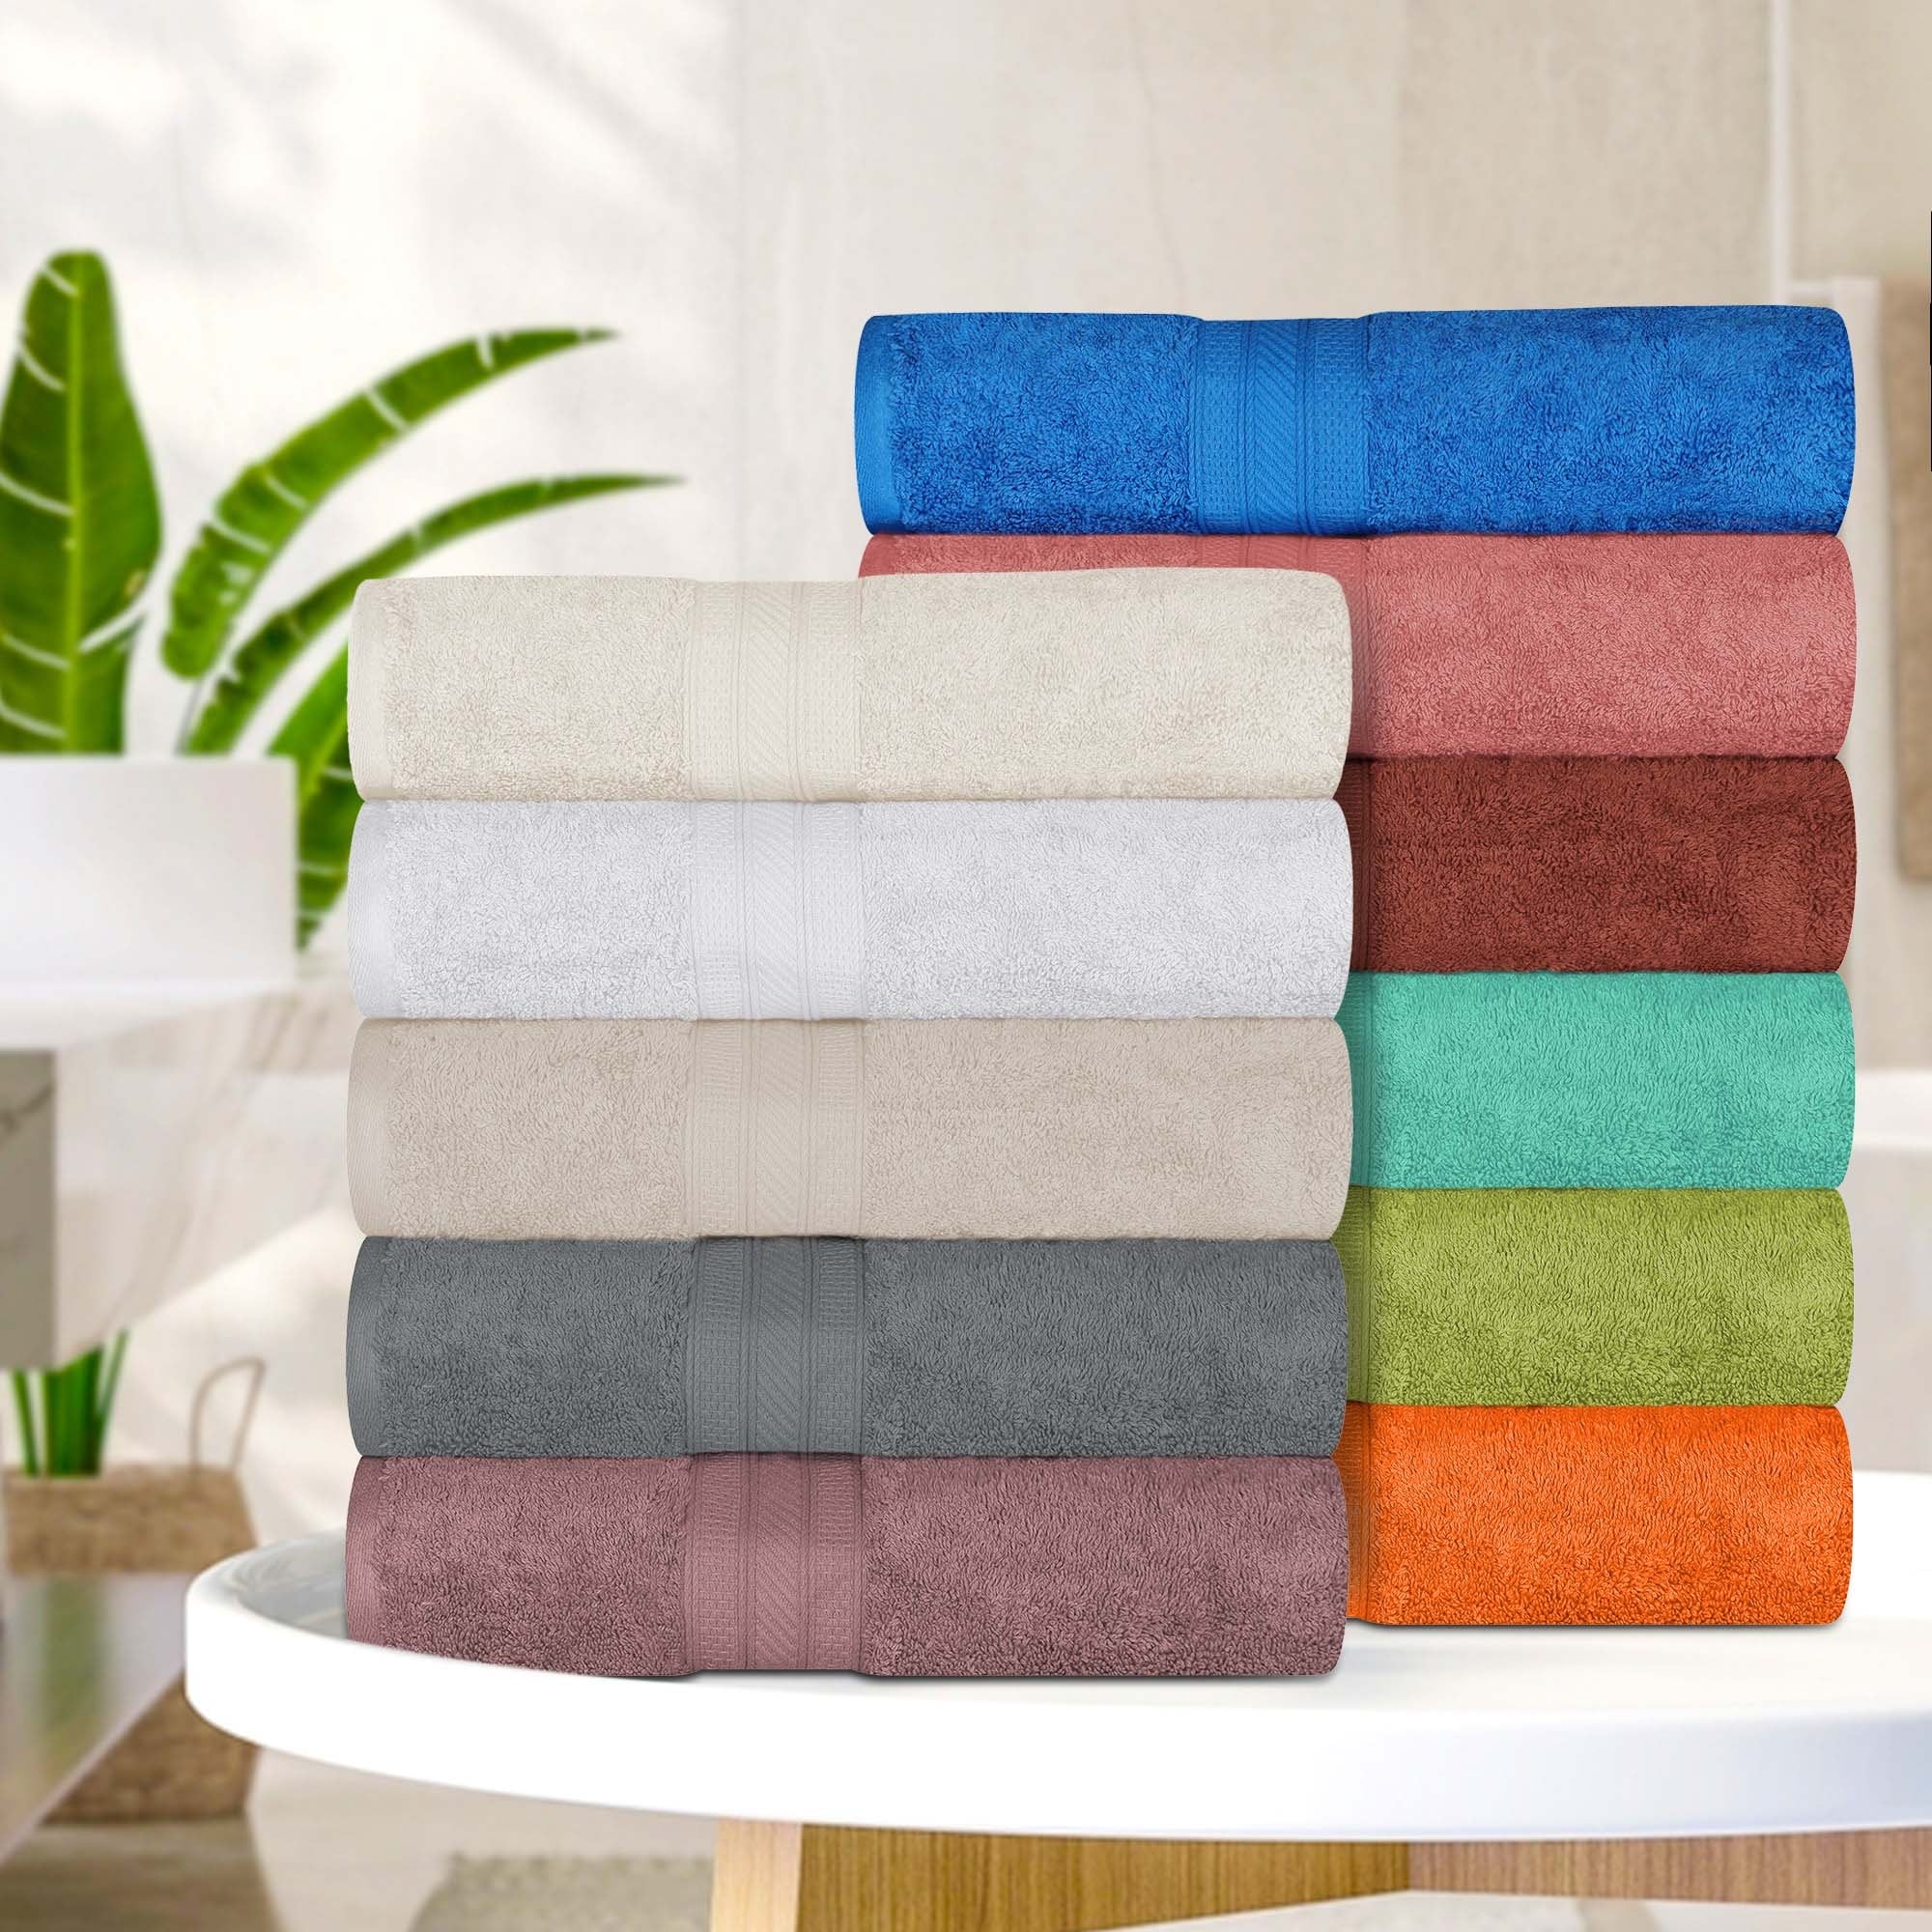 700 - 899 Towels - Bed Bath & Beyond